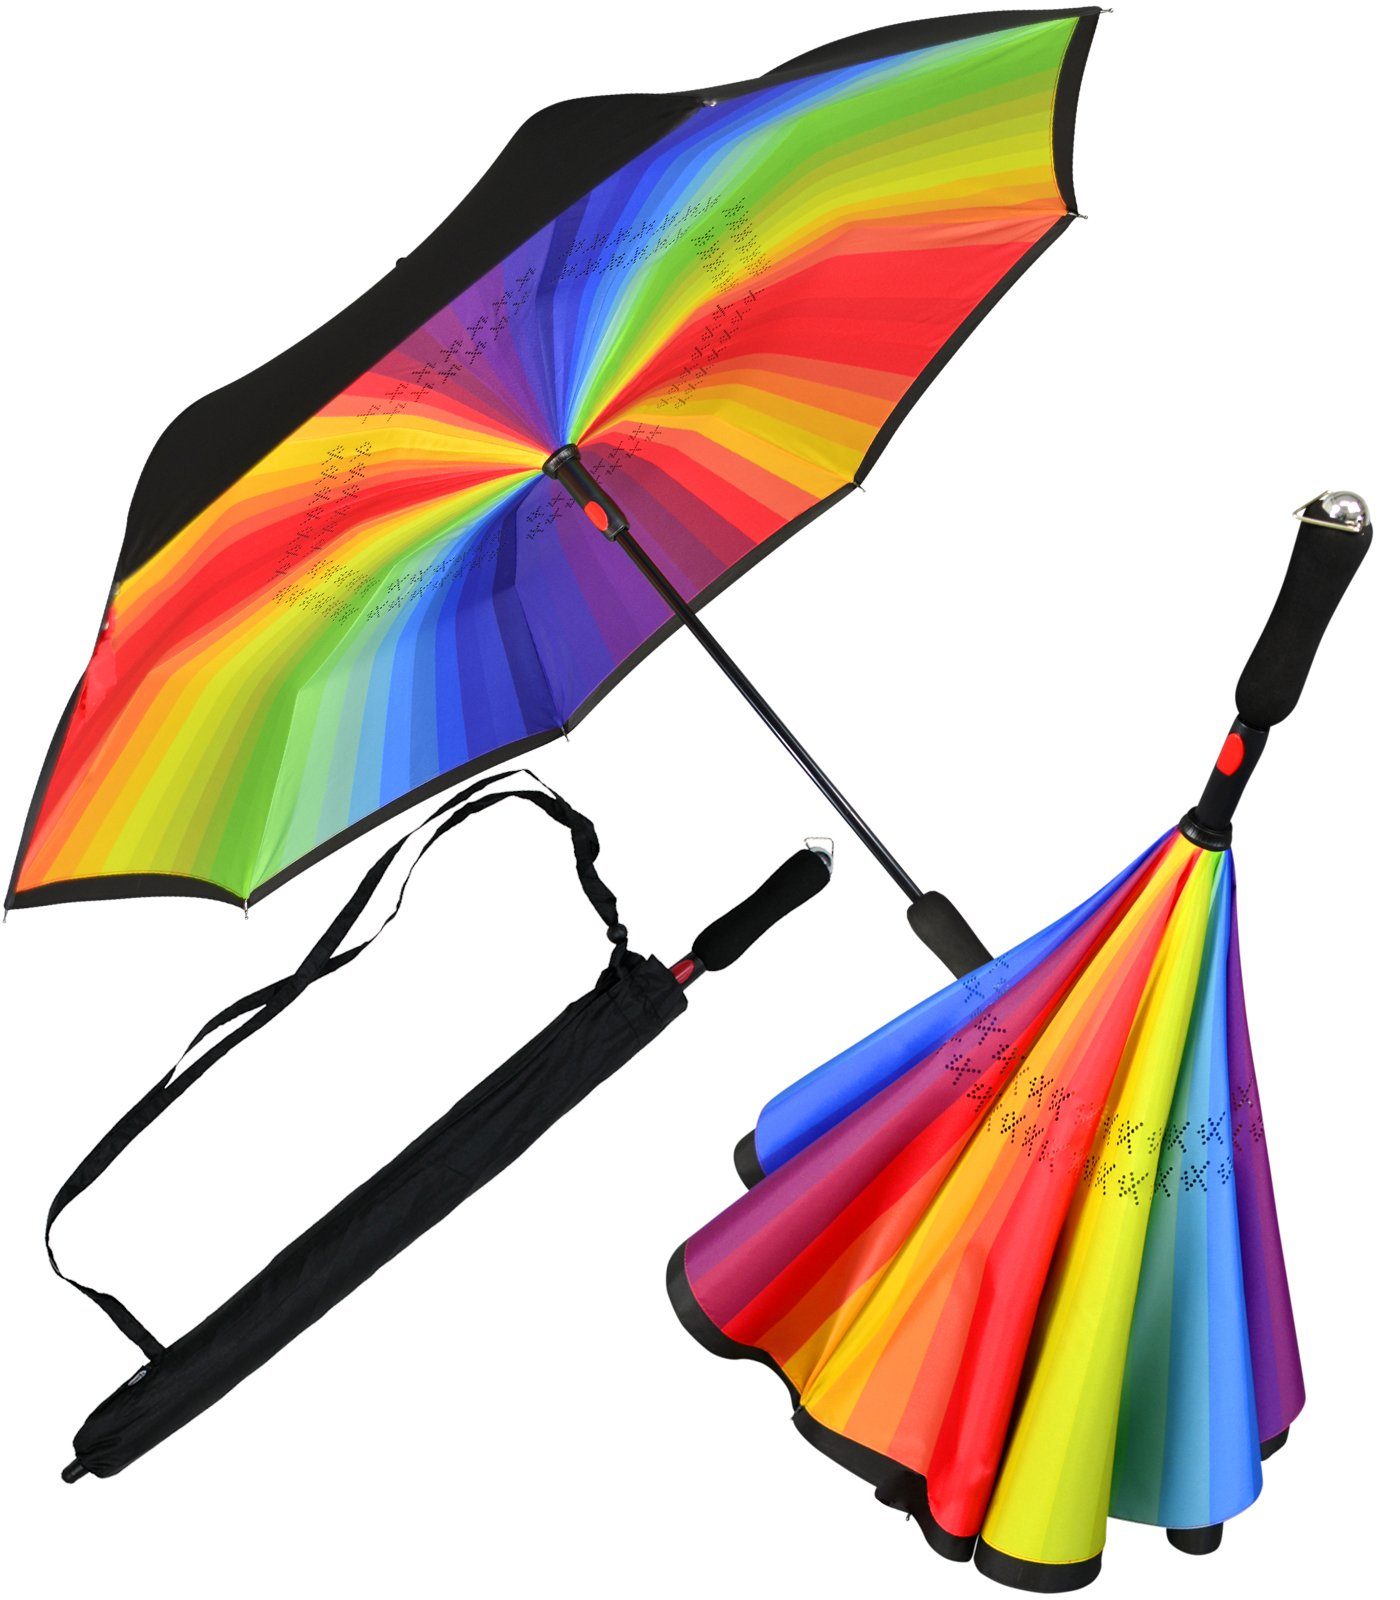 perfekt dem ein- Auto Reverse-Schirm iX-brella Langregenschirm auszusteigen mit - Automatik, öffnen zu oder aus schwarz-bunt um umgedreht